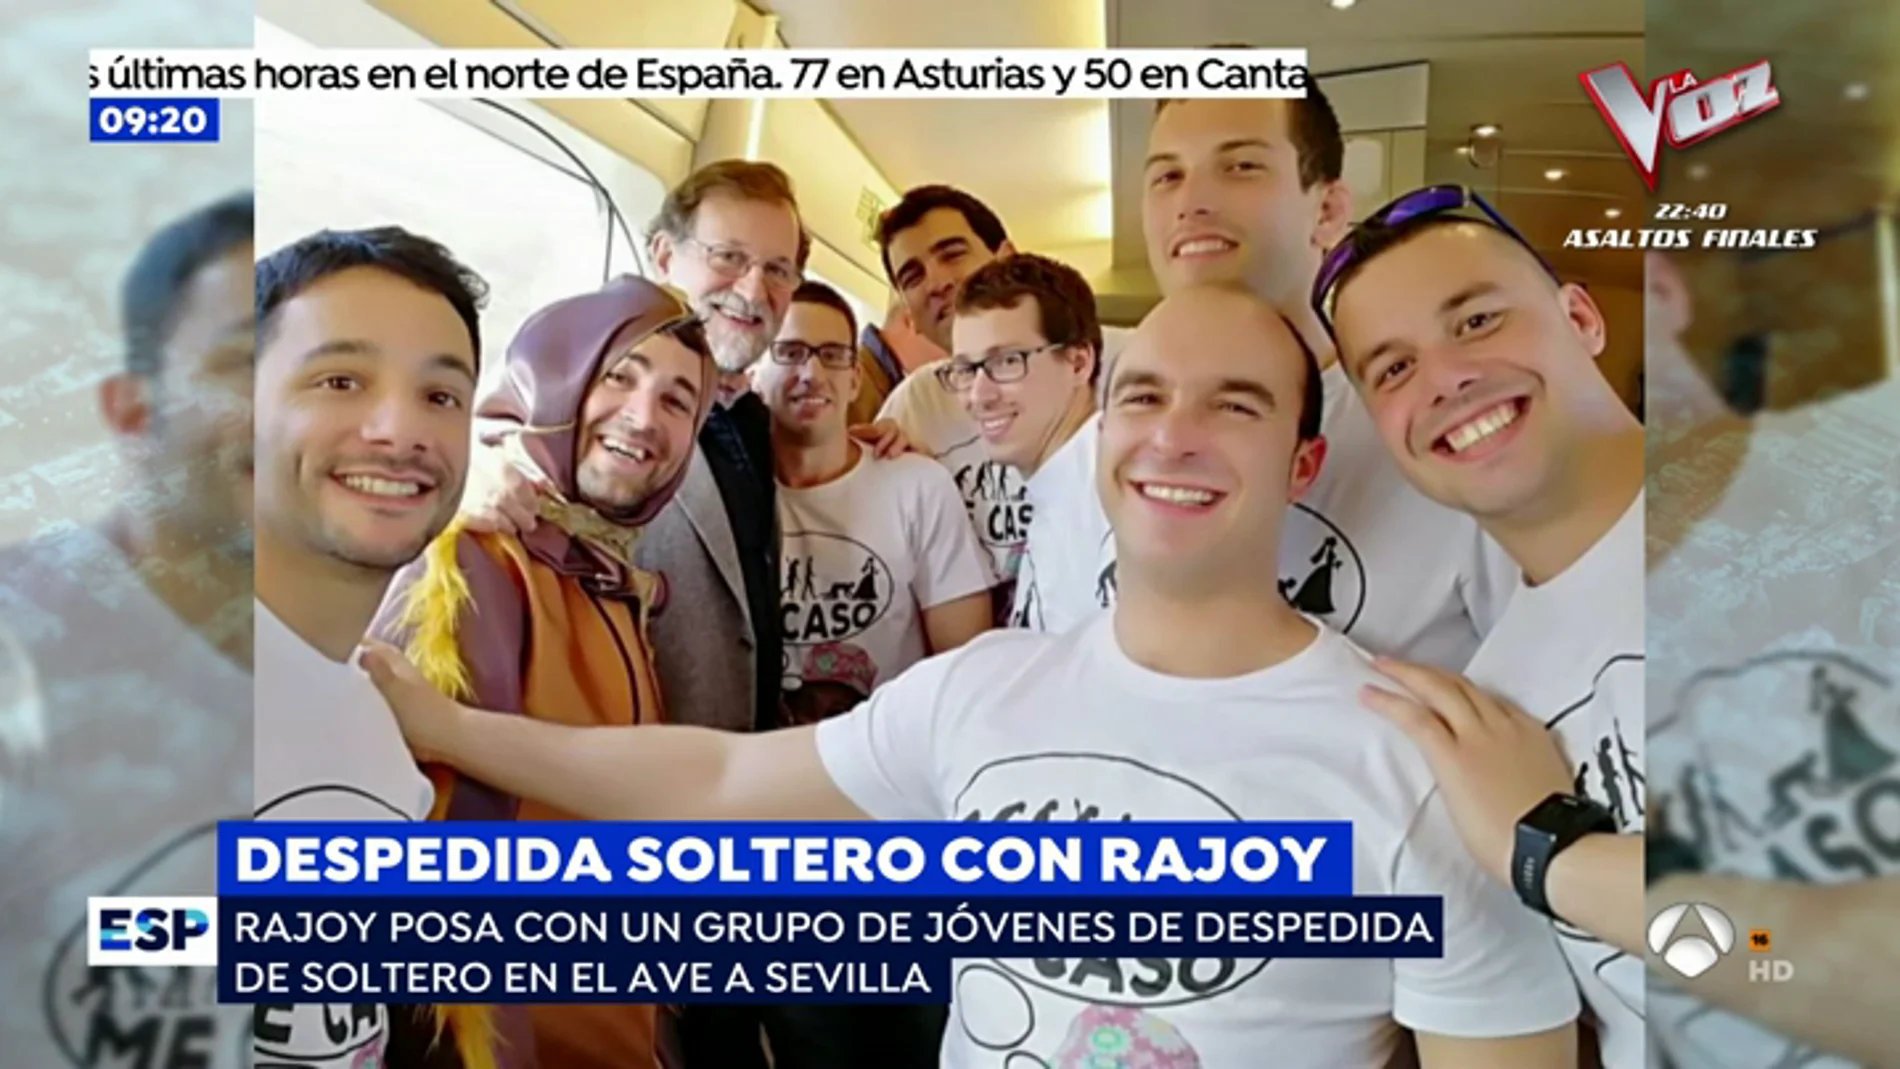 Rajoy, posa con un grupo de jóvenes de despedida de soltero